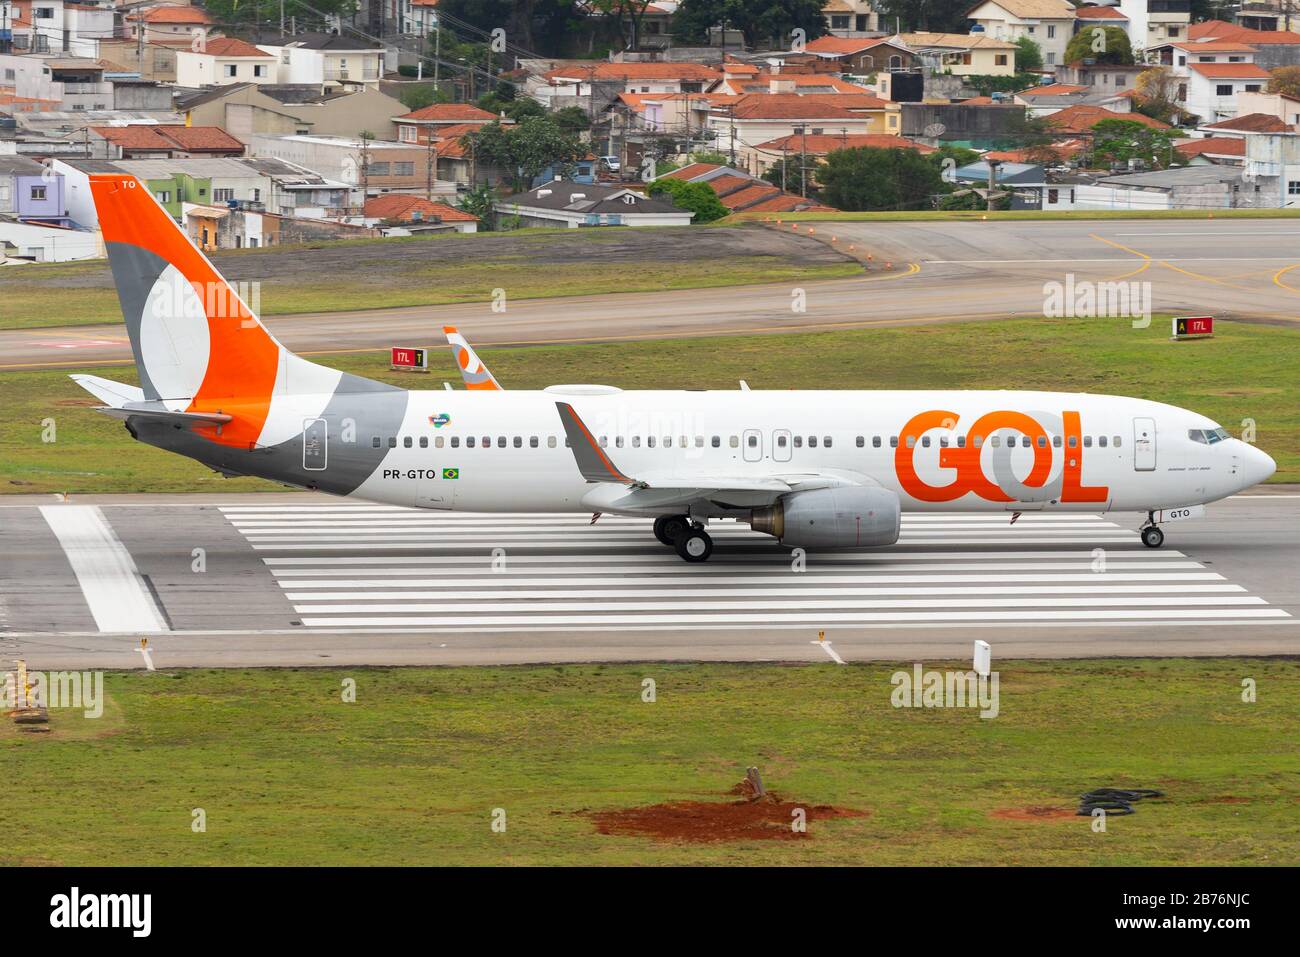 Gol Airlines (Linhas Aéreas) Boeing 737 oltre la soglia di pista dell'aeroporto nazionale Congonhas (CGH / SBSP) a Sao Paulo, Brasile. Aeromobili PR-GTO. Foto Stock